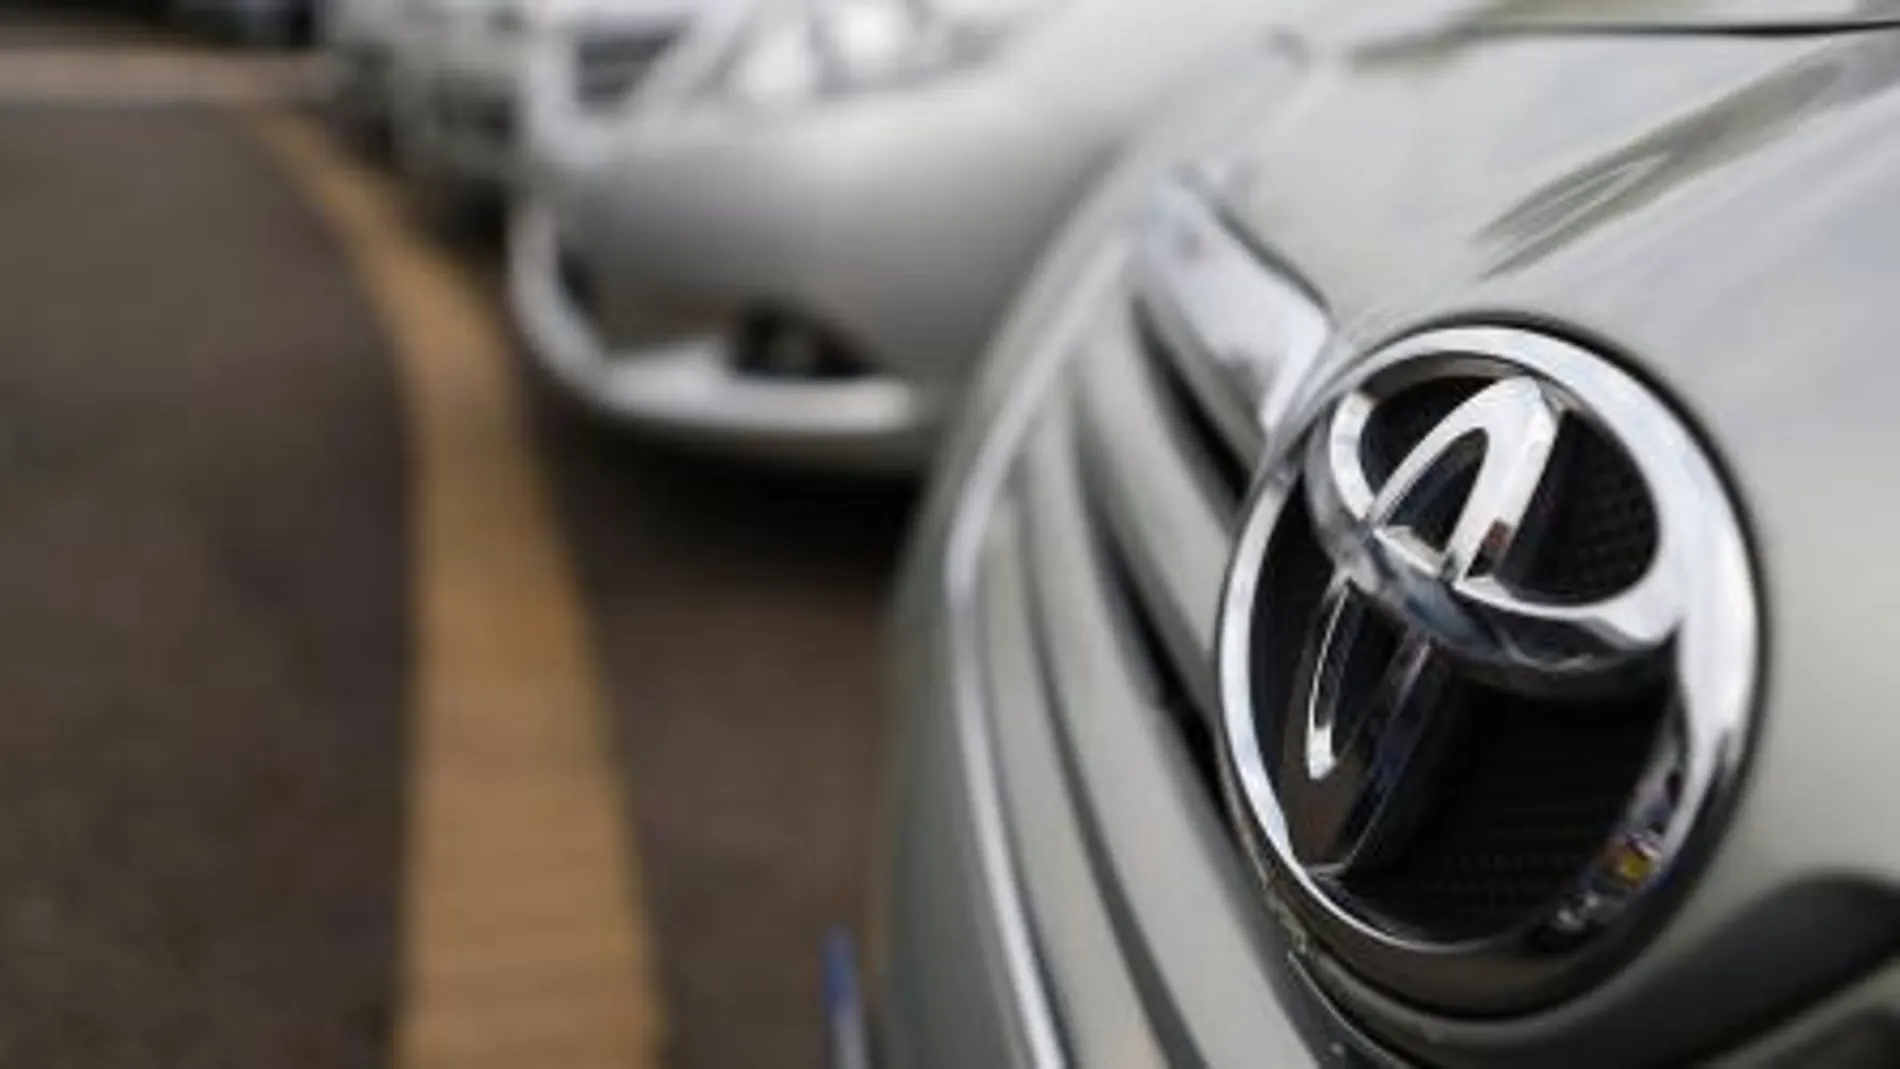 Toyota también cosechó un beneficio operativo récord de 2,29 billones de yenes (16.190 millones de euros).